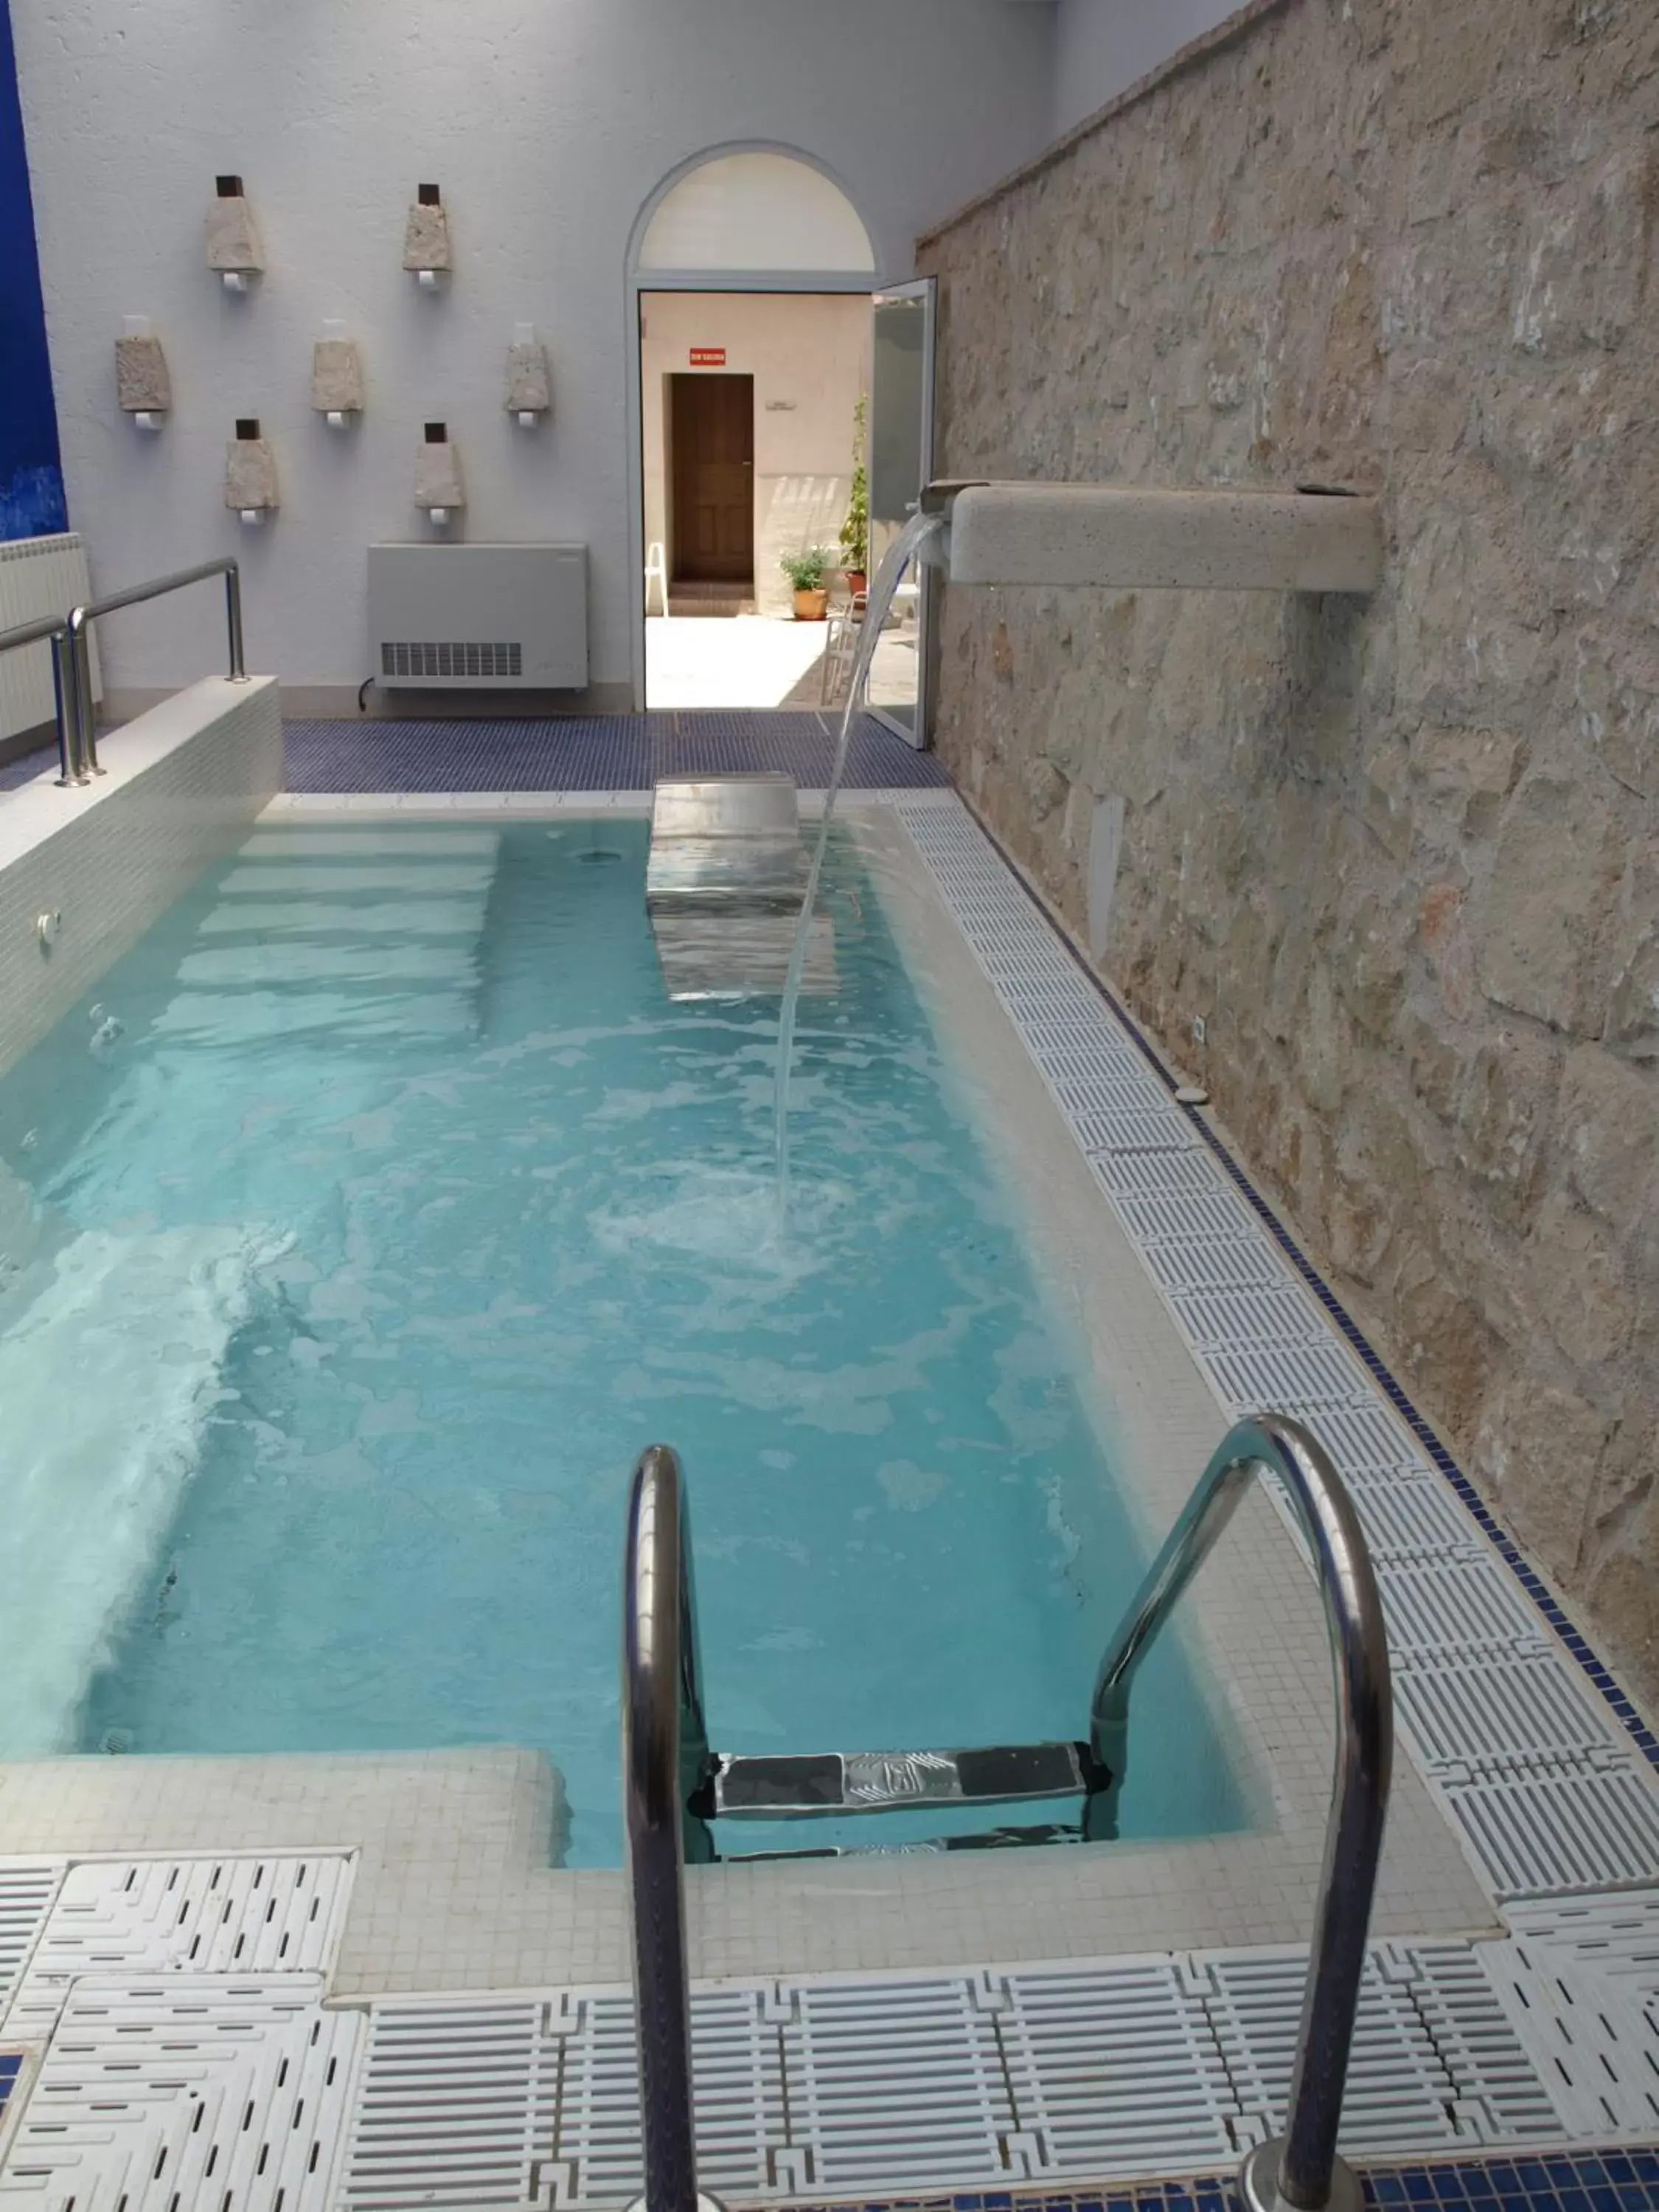 Spa and wellness centre/facilities, Swimming Pool in Hotel Spa La Casa Del Convento